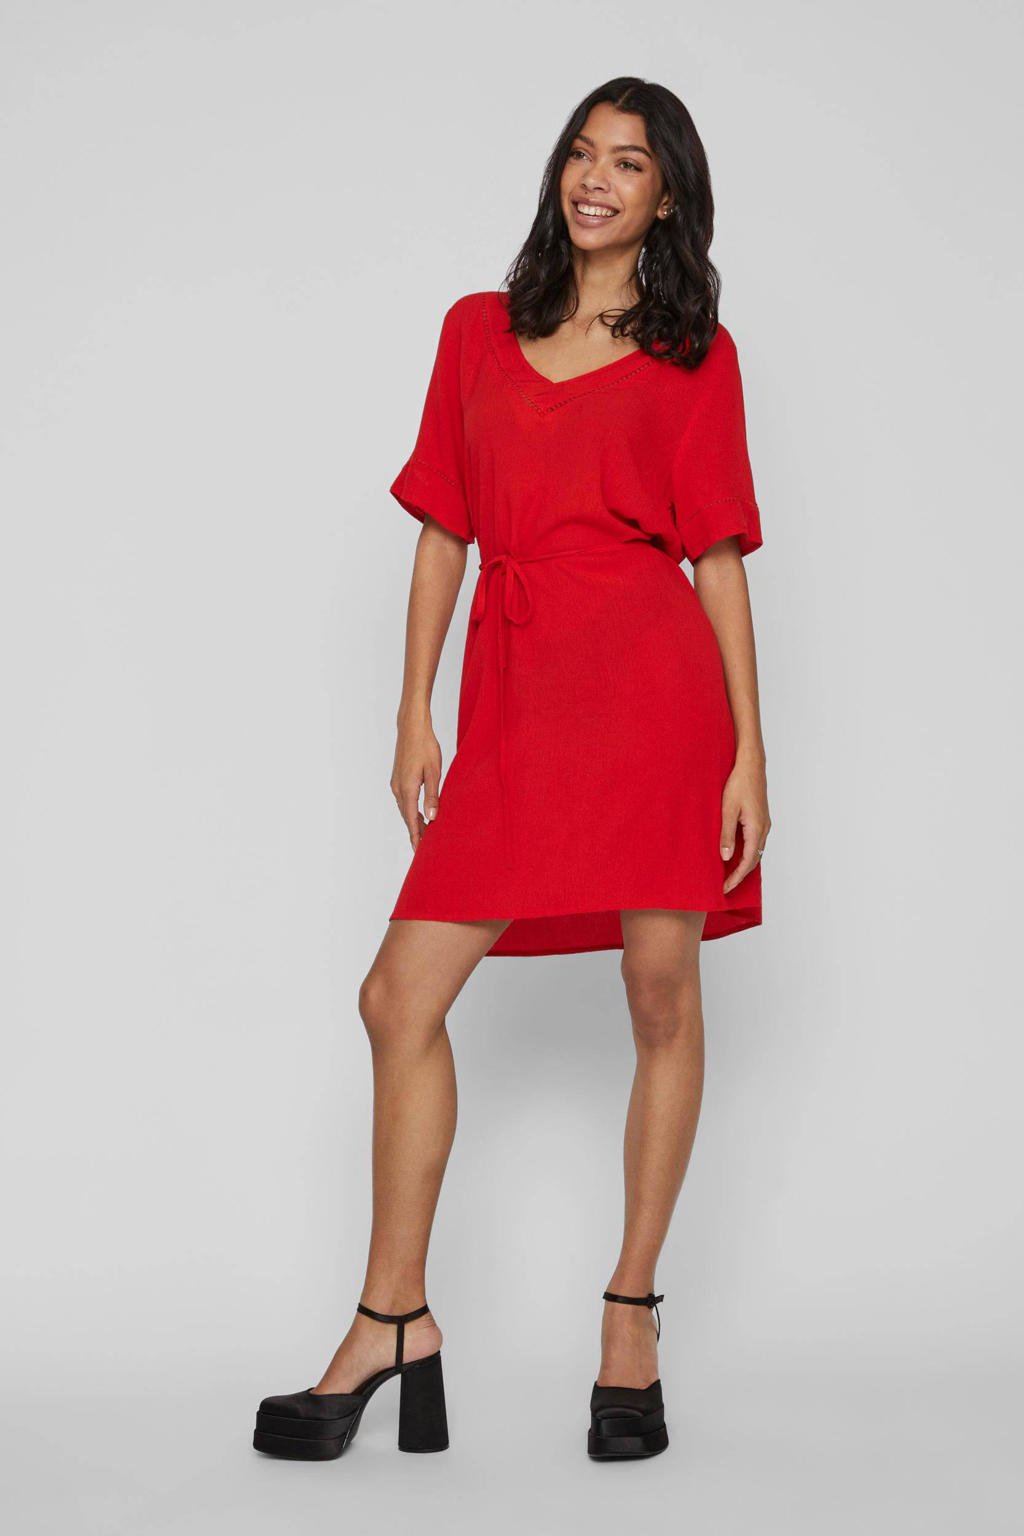 Rode dames VILA jurk van viscose met korte mouwen, V-hals en borduursels